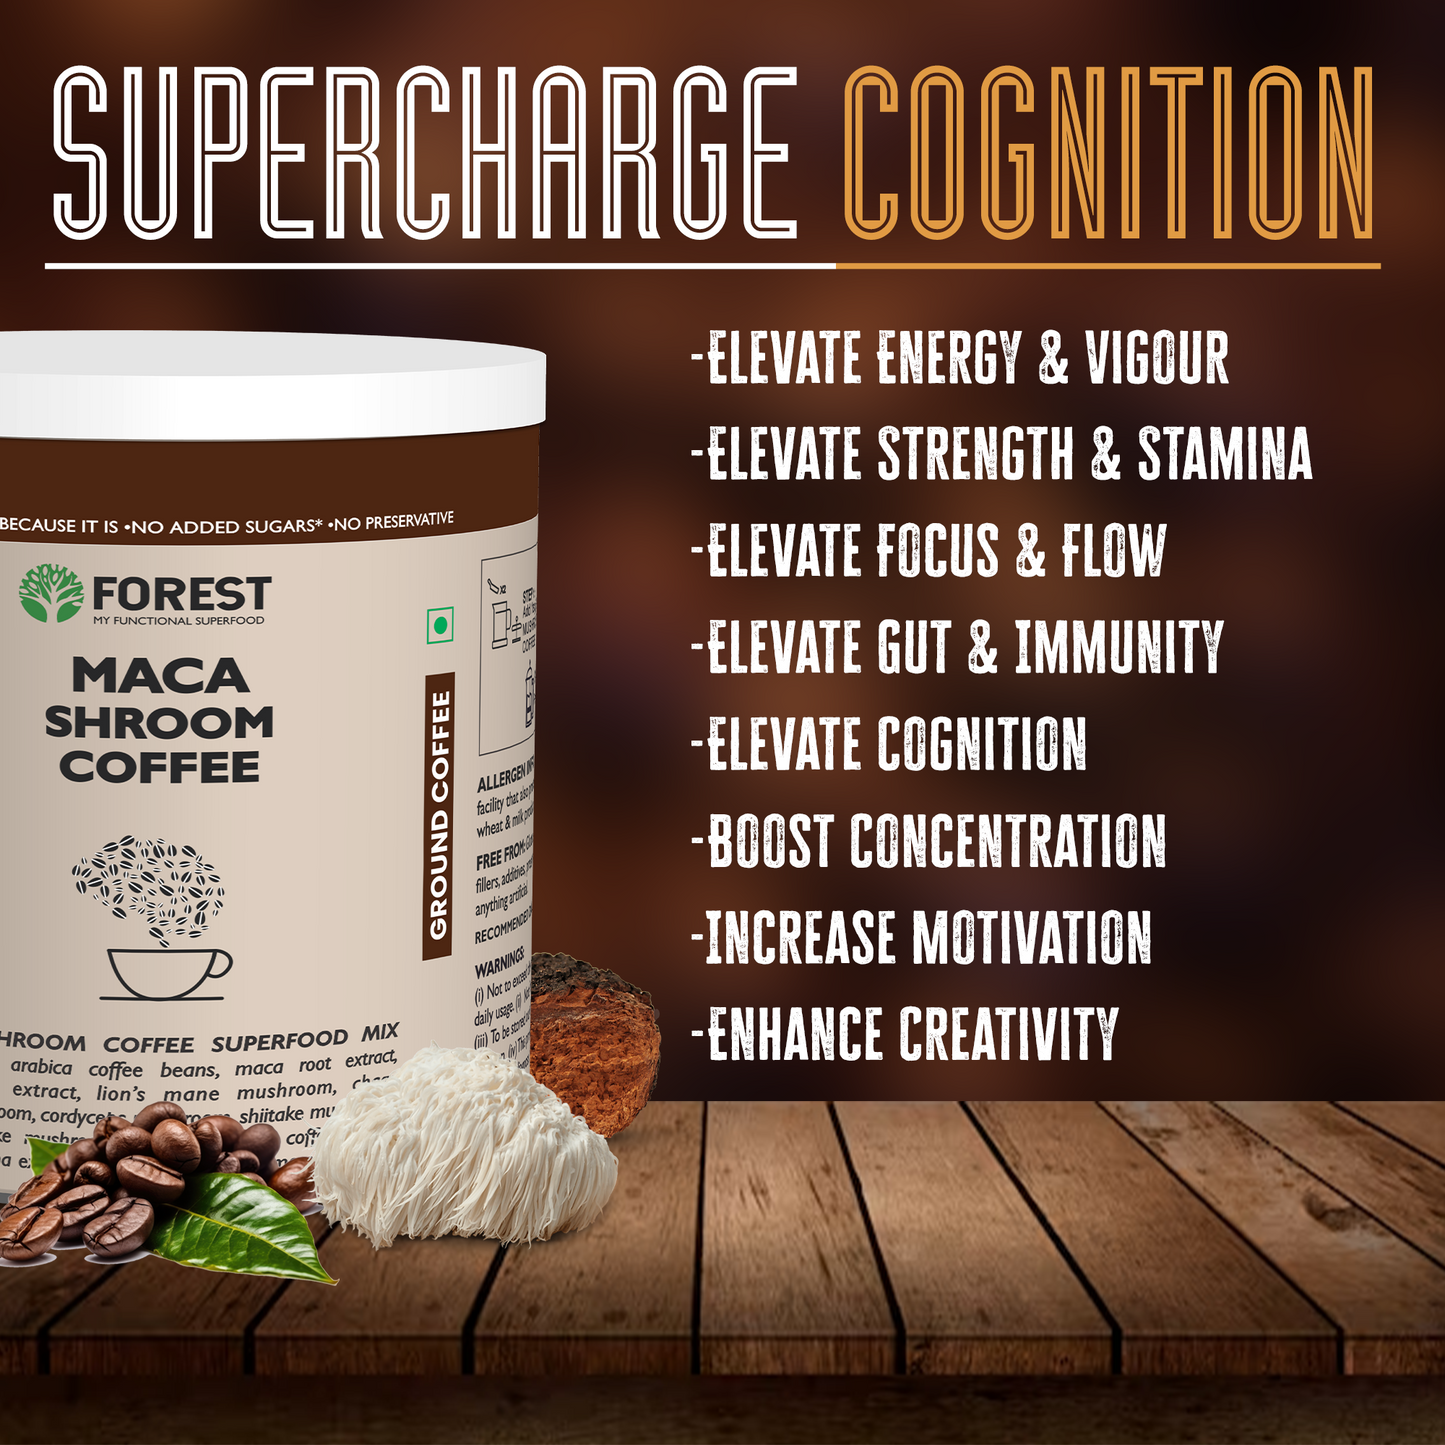 Maca Shroom Coffee - 100% Natural Coffee Powder